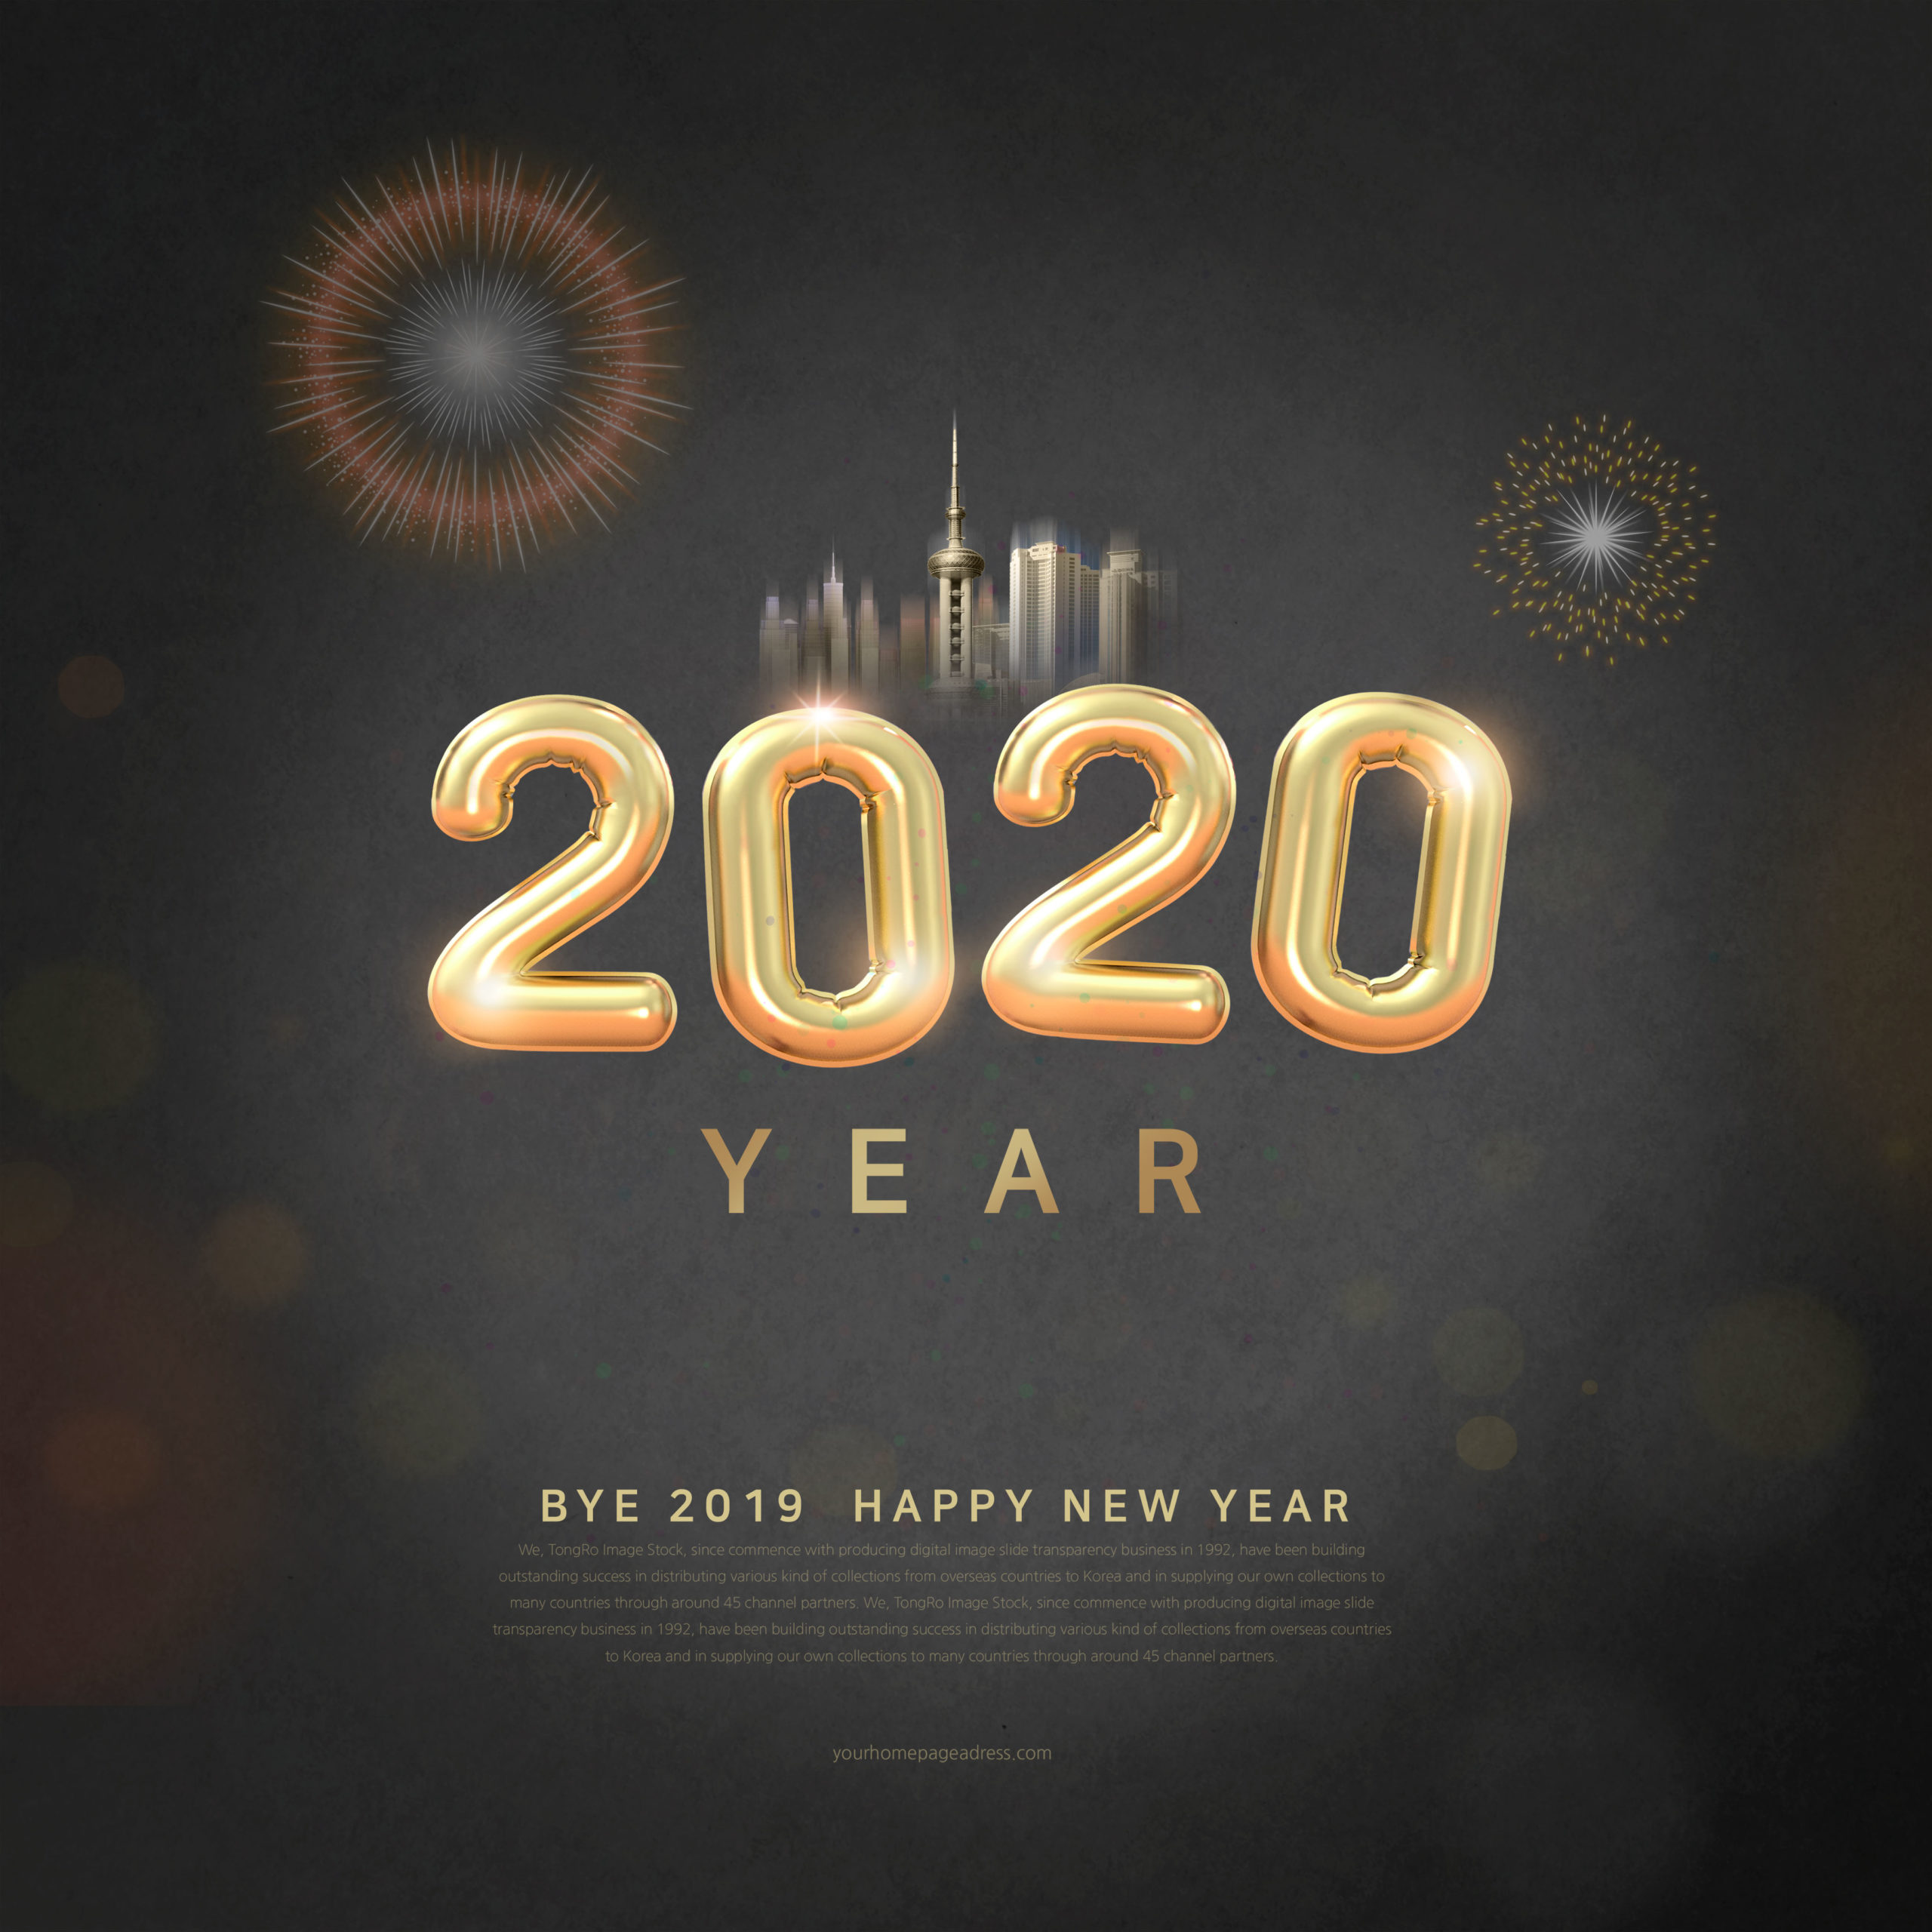 豪华金色2020新年快乐字体海报/贺卡/传单设计素材合集插图(3)